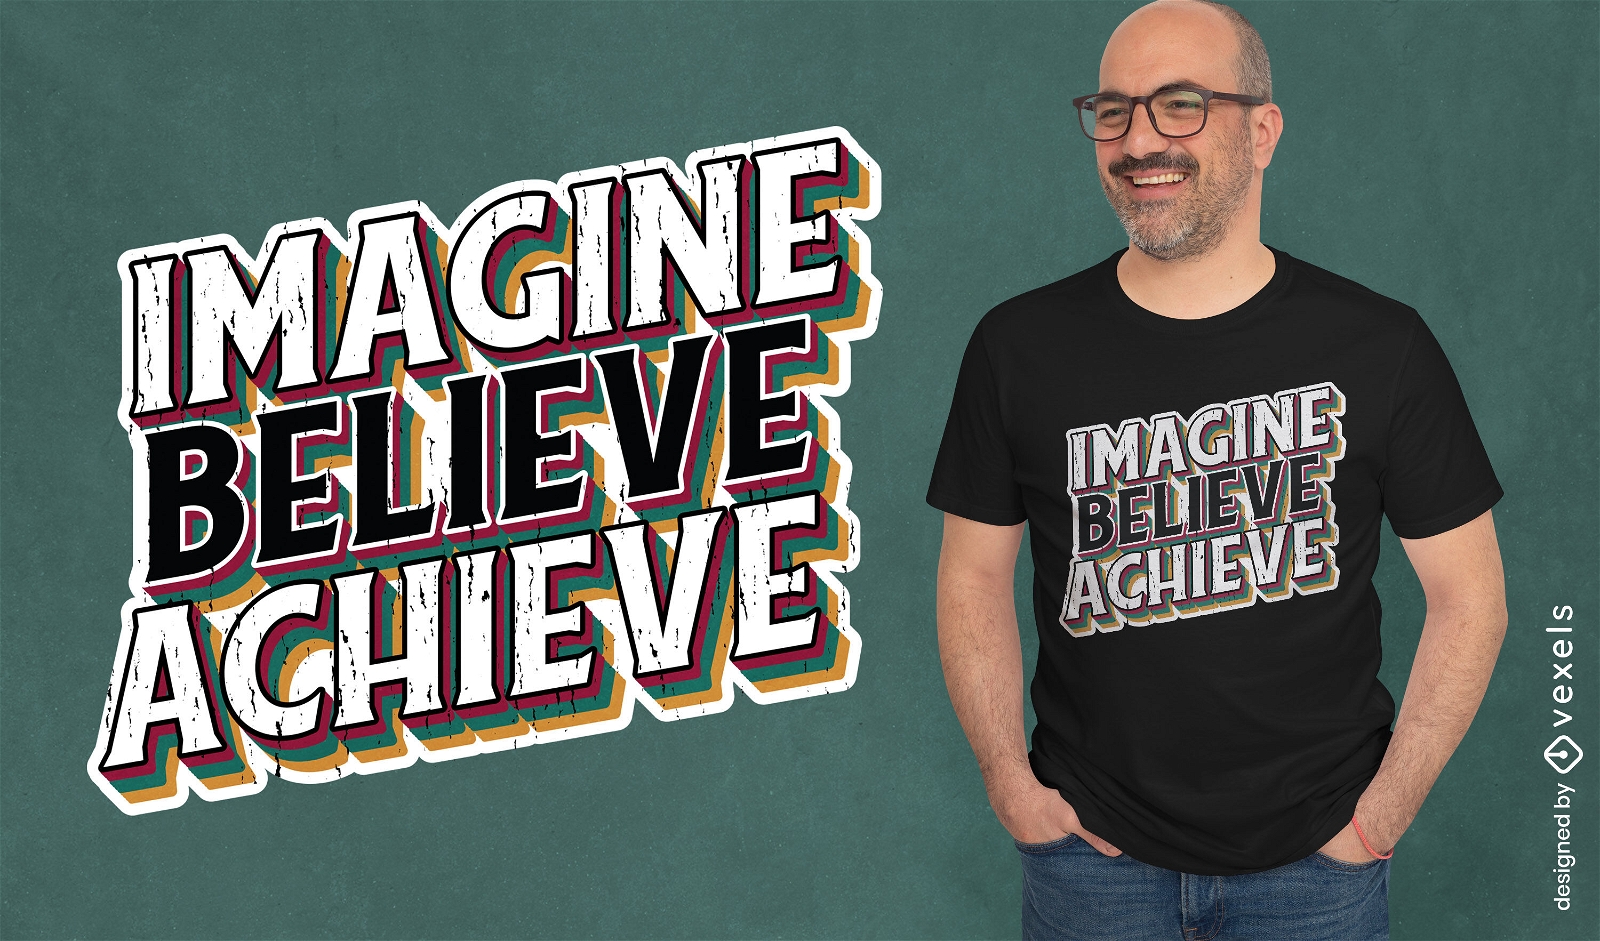 Glauben Sie an motivierendes Zitat-T-Shirt-Design